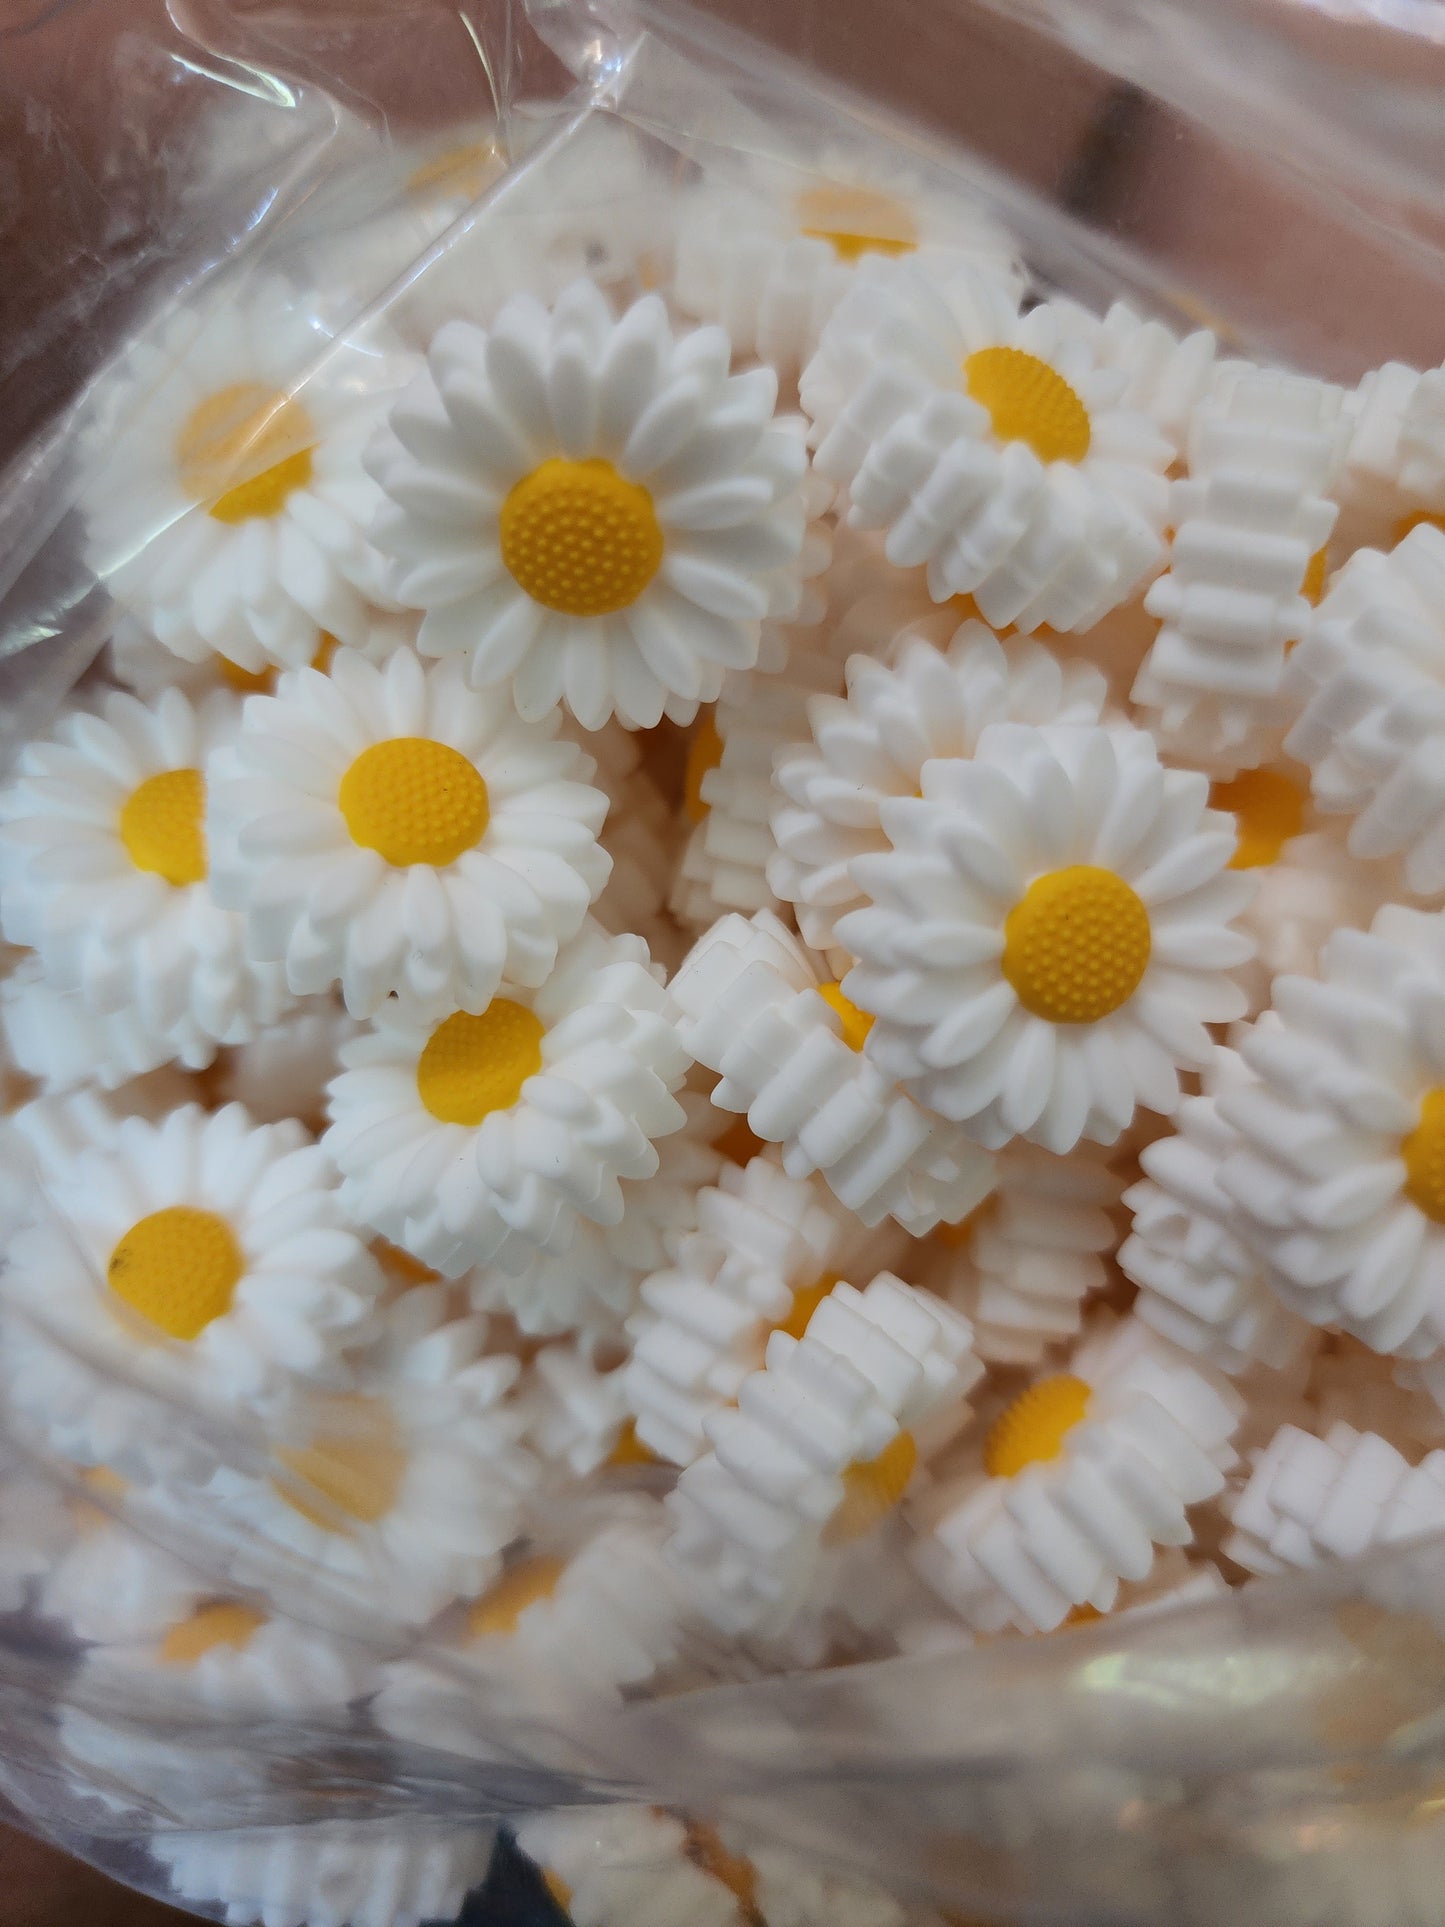 Custom Daisy Sunflower Focal